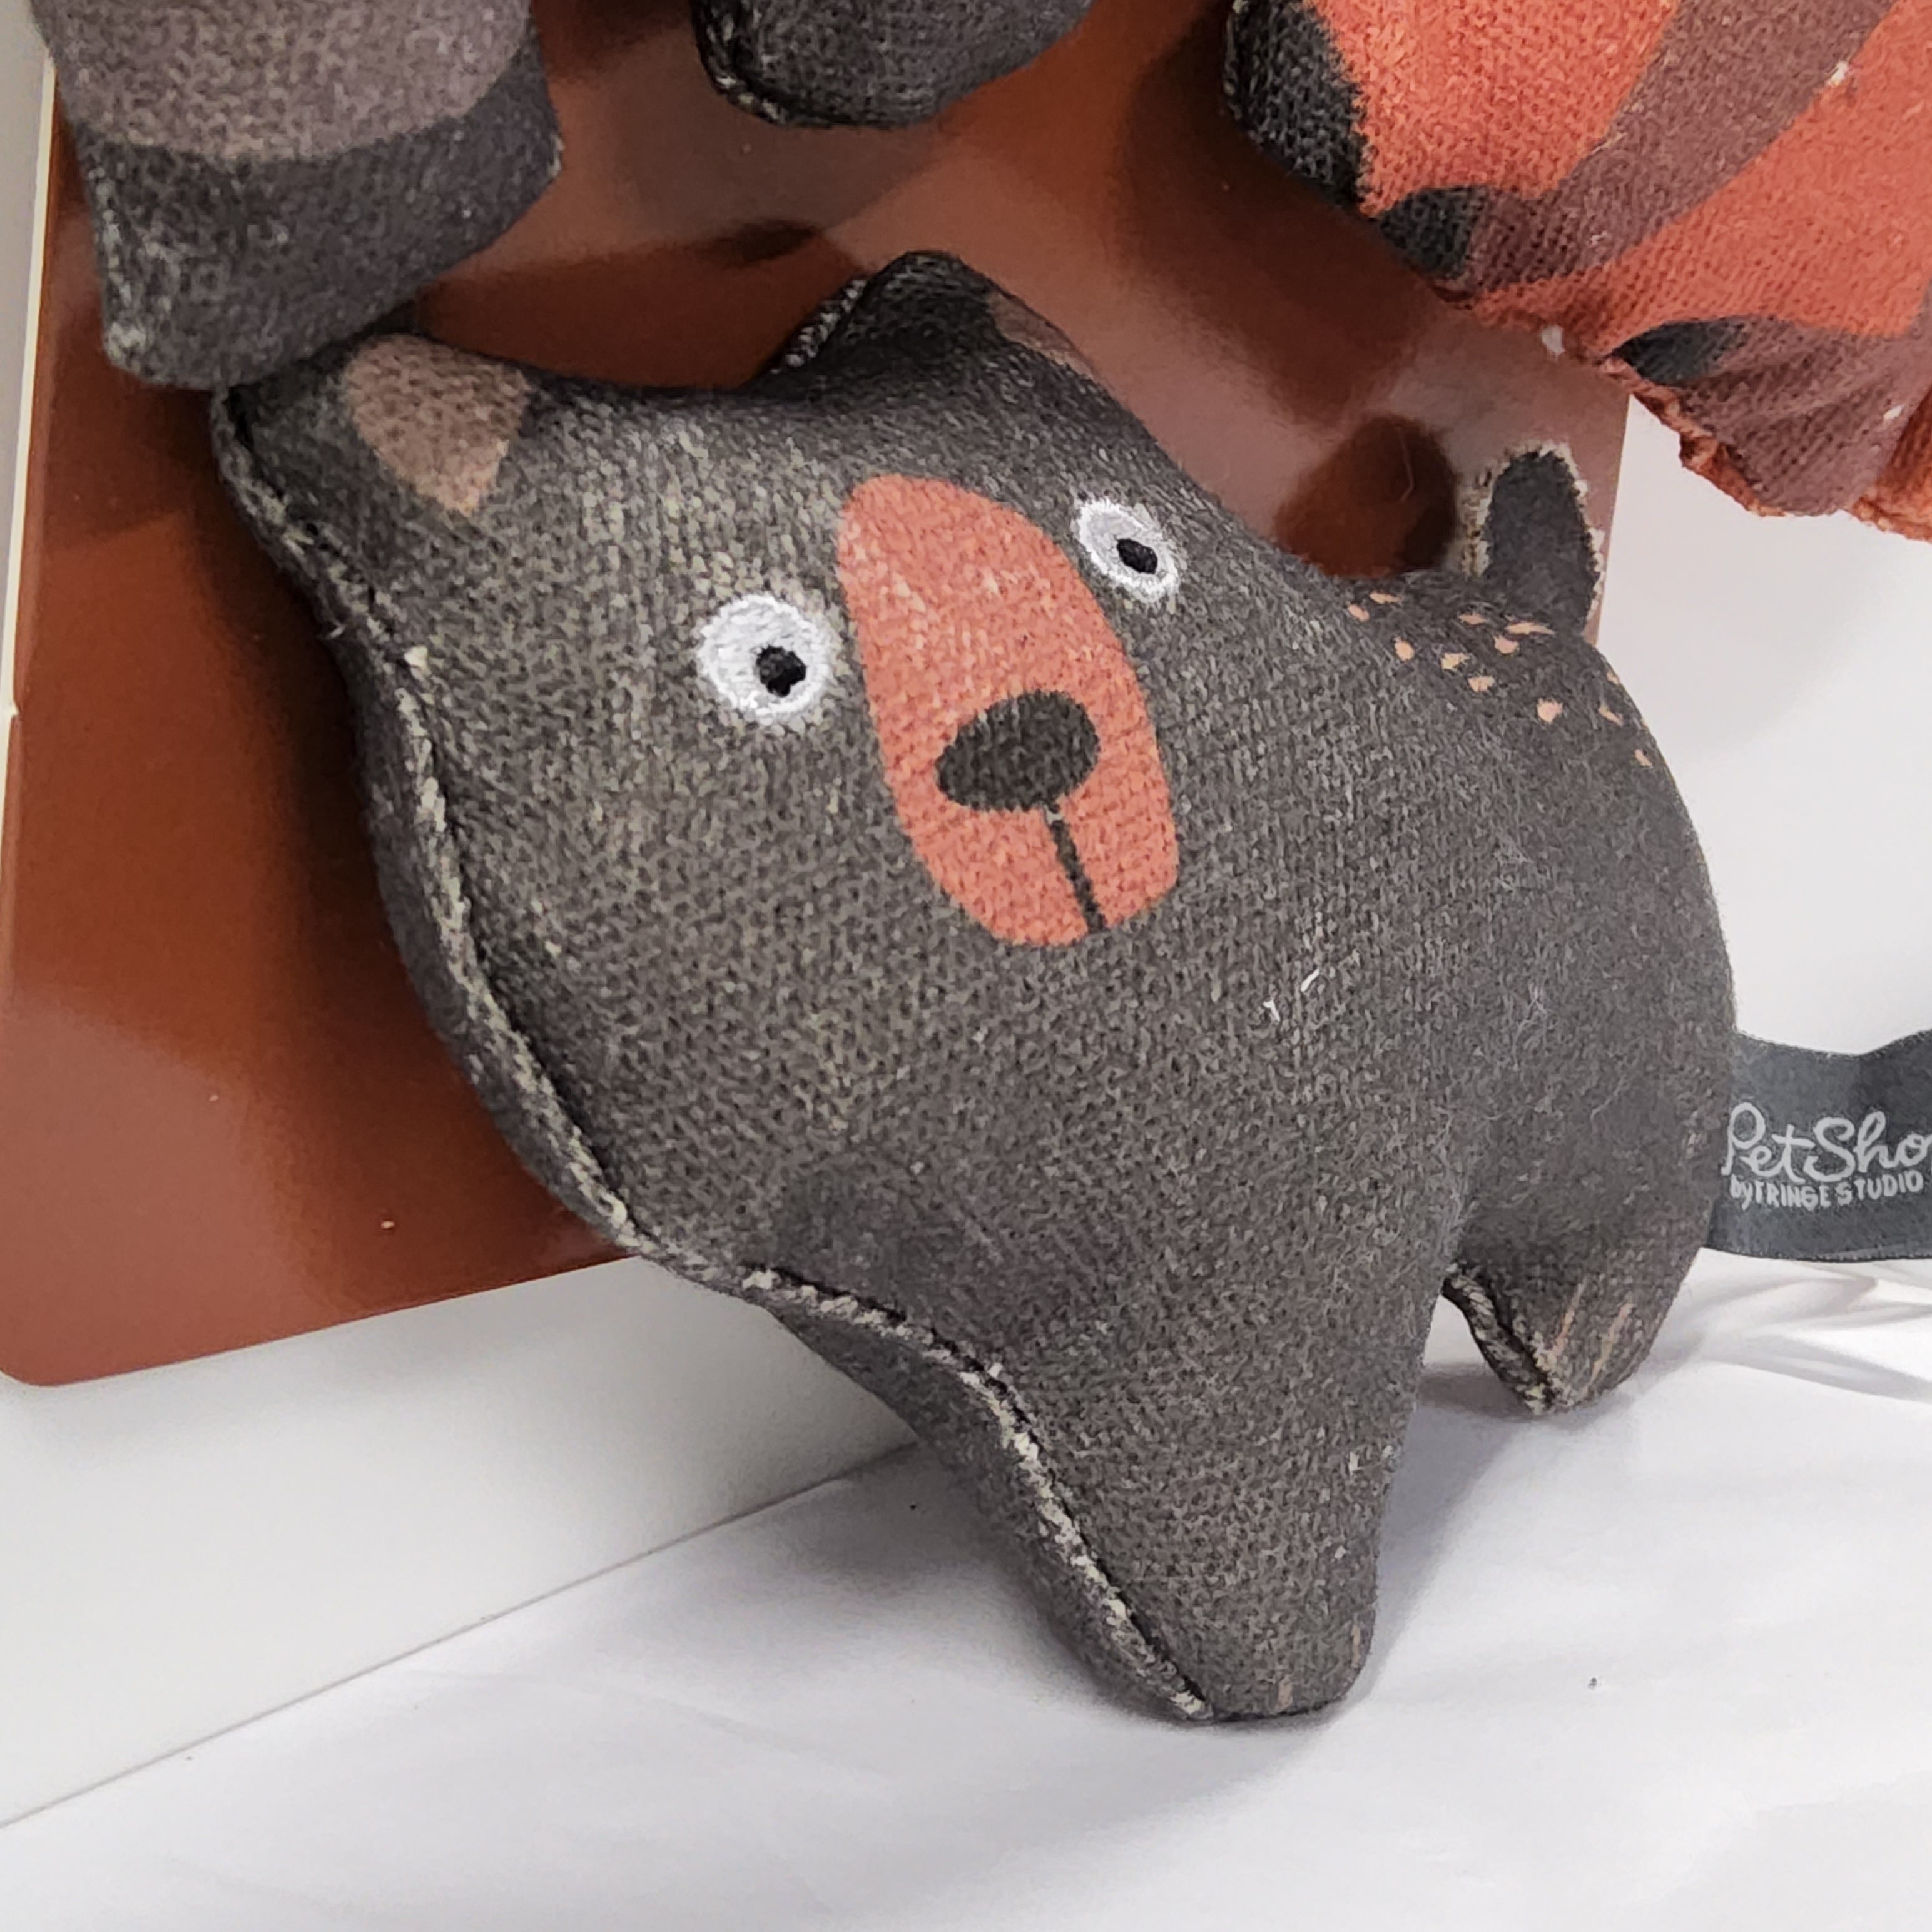 PetShop - Mini Canvas Dog Toy Set - Forest Friends - FR521020